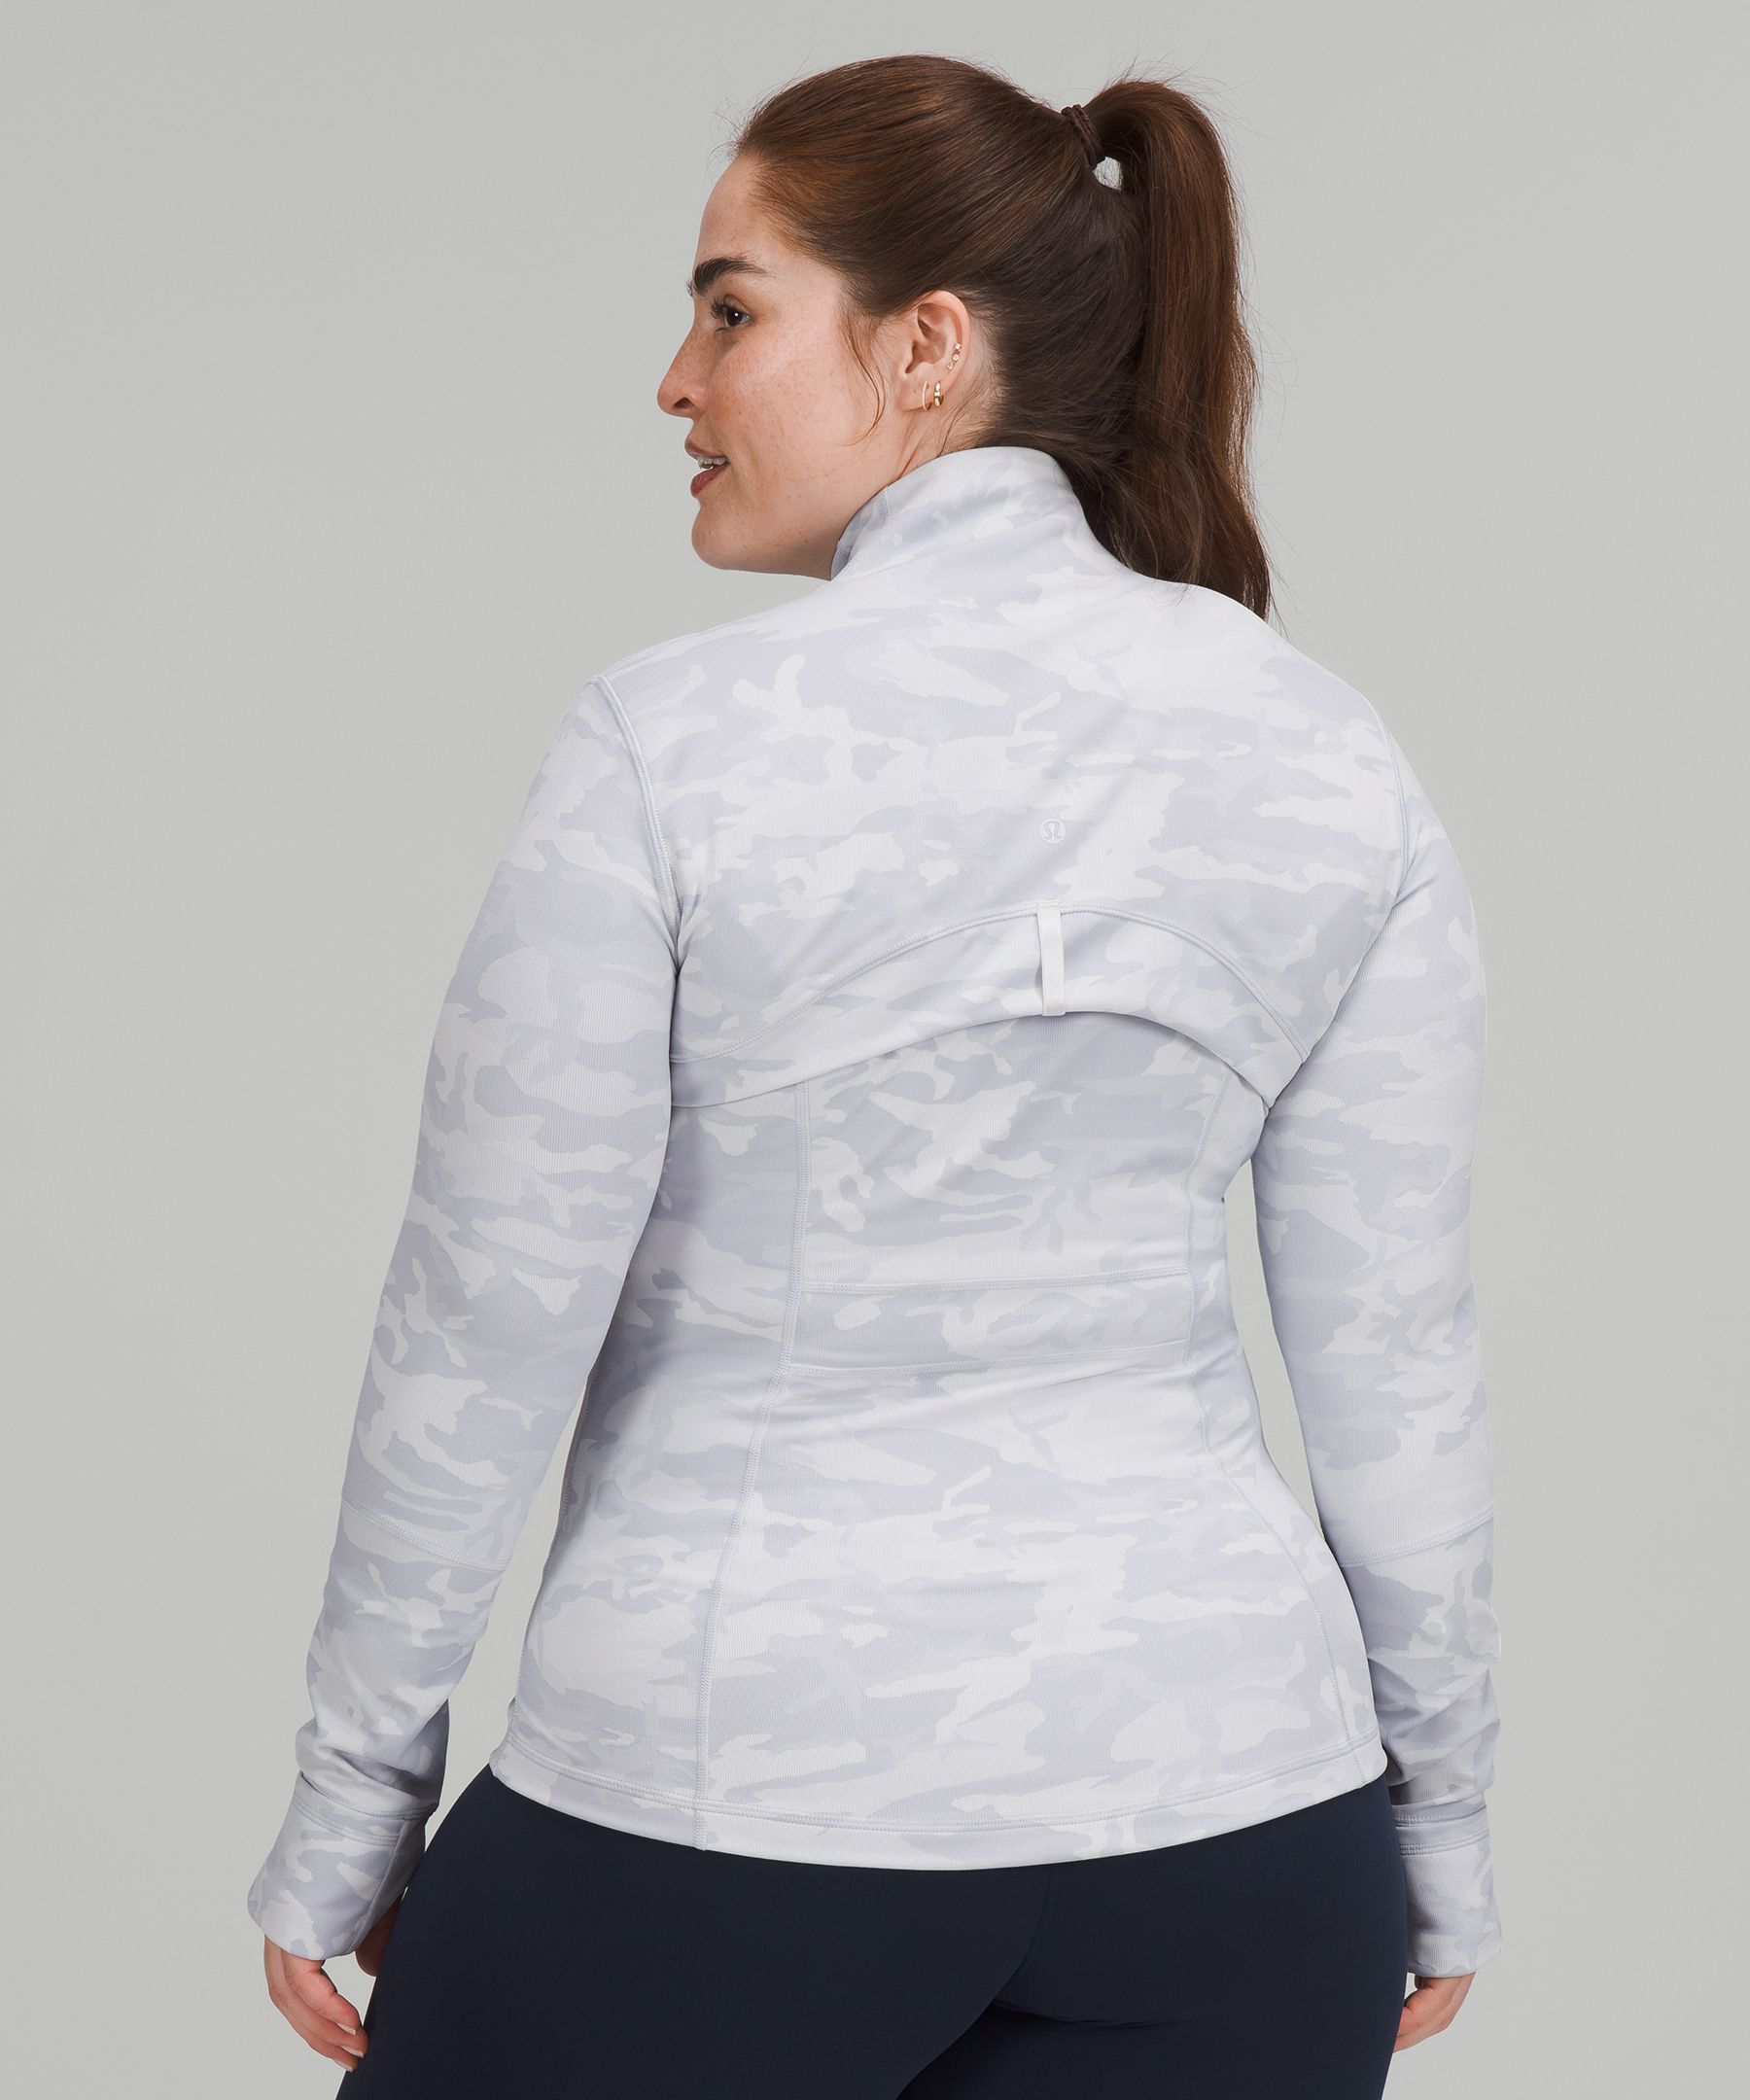 Define jacket *Luxtreme (Incognito Camo Jacquard Alpine White